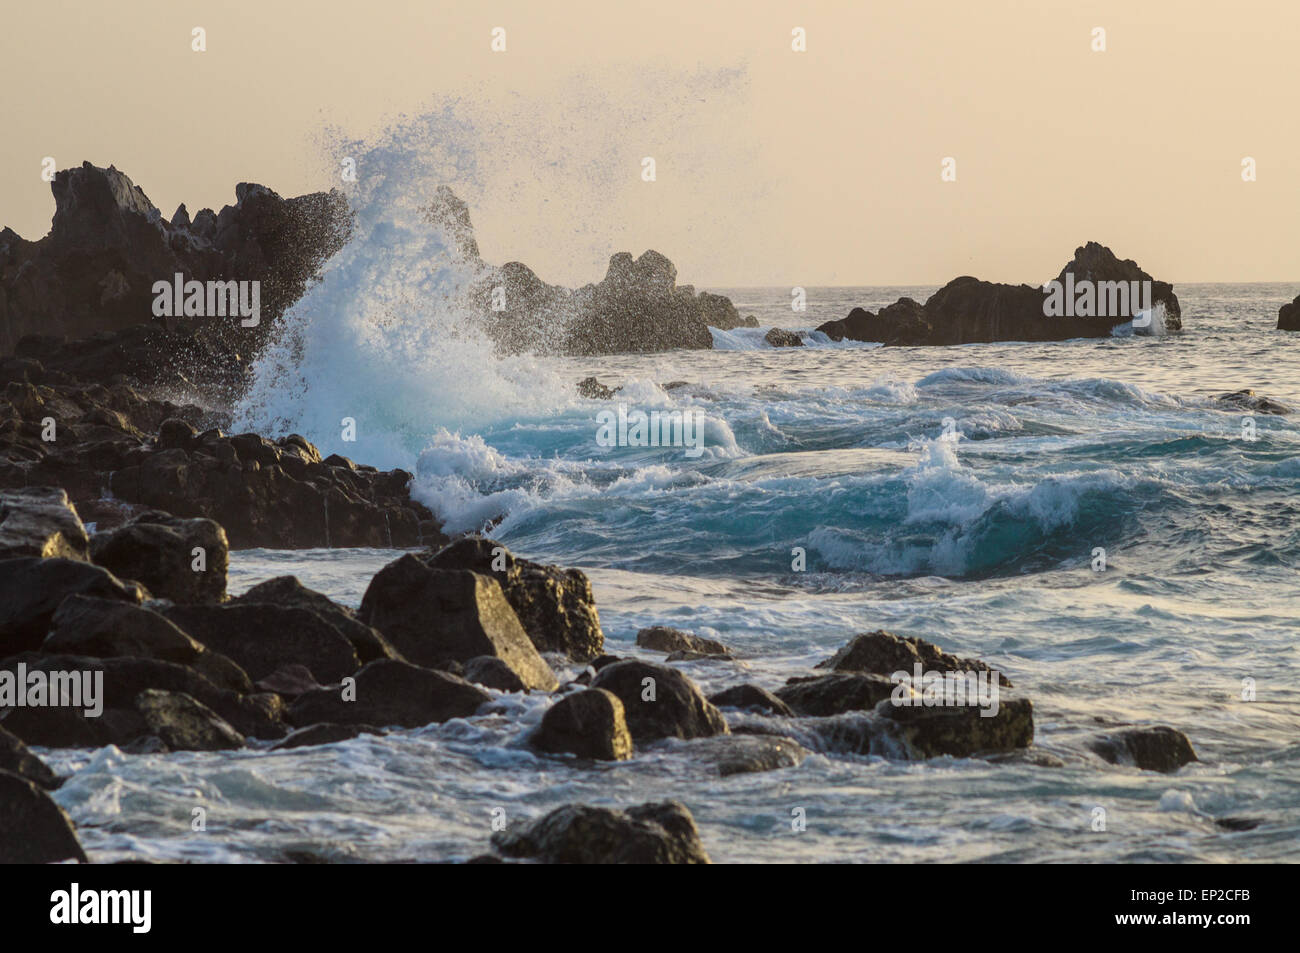 Grandi onde che si infrangono sulla costa rocciosa al tramonto, Tenerife, Spagna Foto Stock